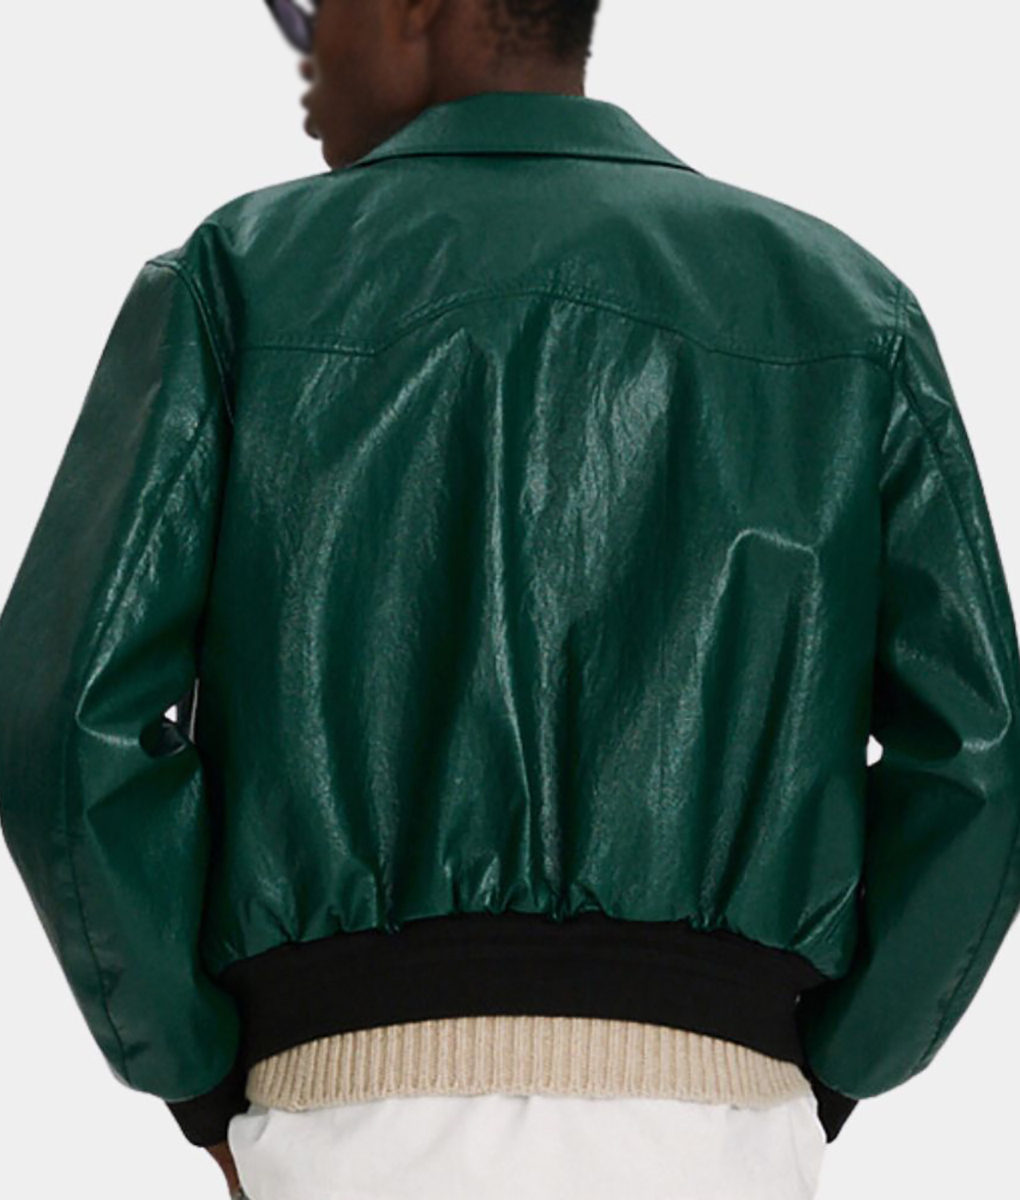 Donald Mens Vintage Leather Bomber Jacket